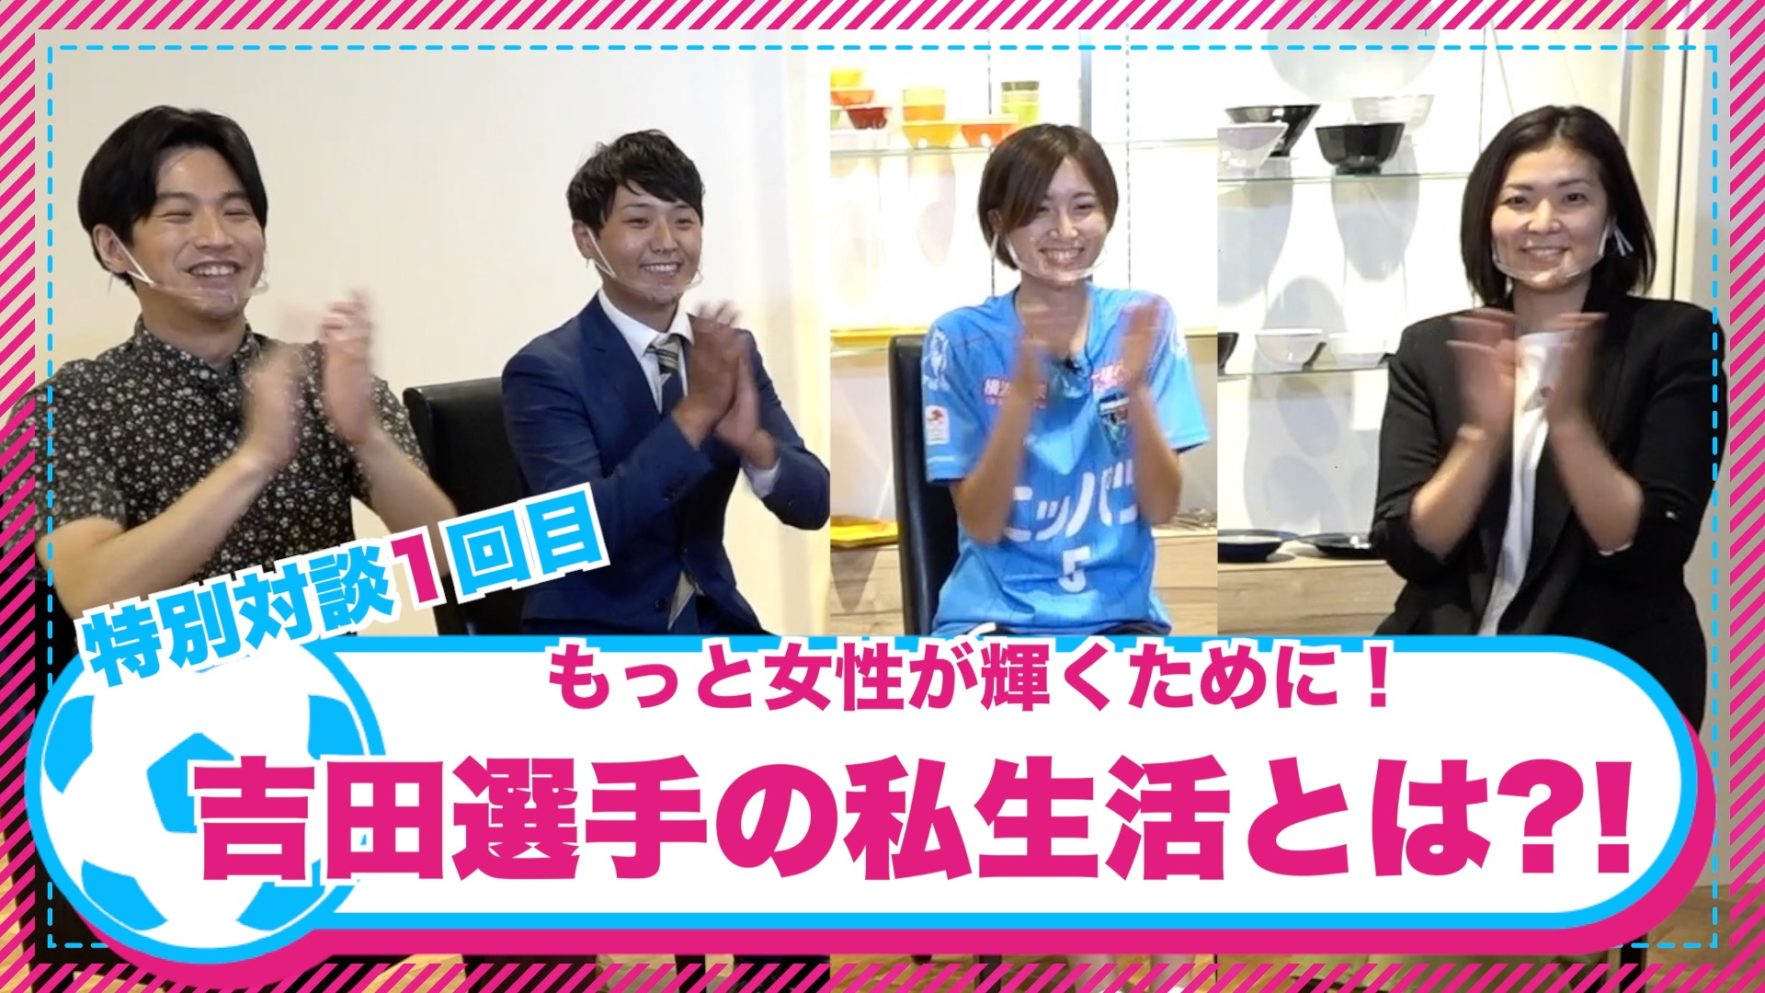 ニッパツ横浜fcシーガルズコラボ番組 もっと 女性が輝くために 第1回を配信 Onodera Group